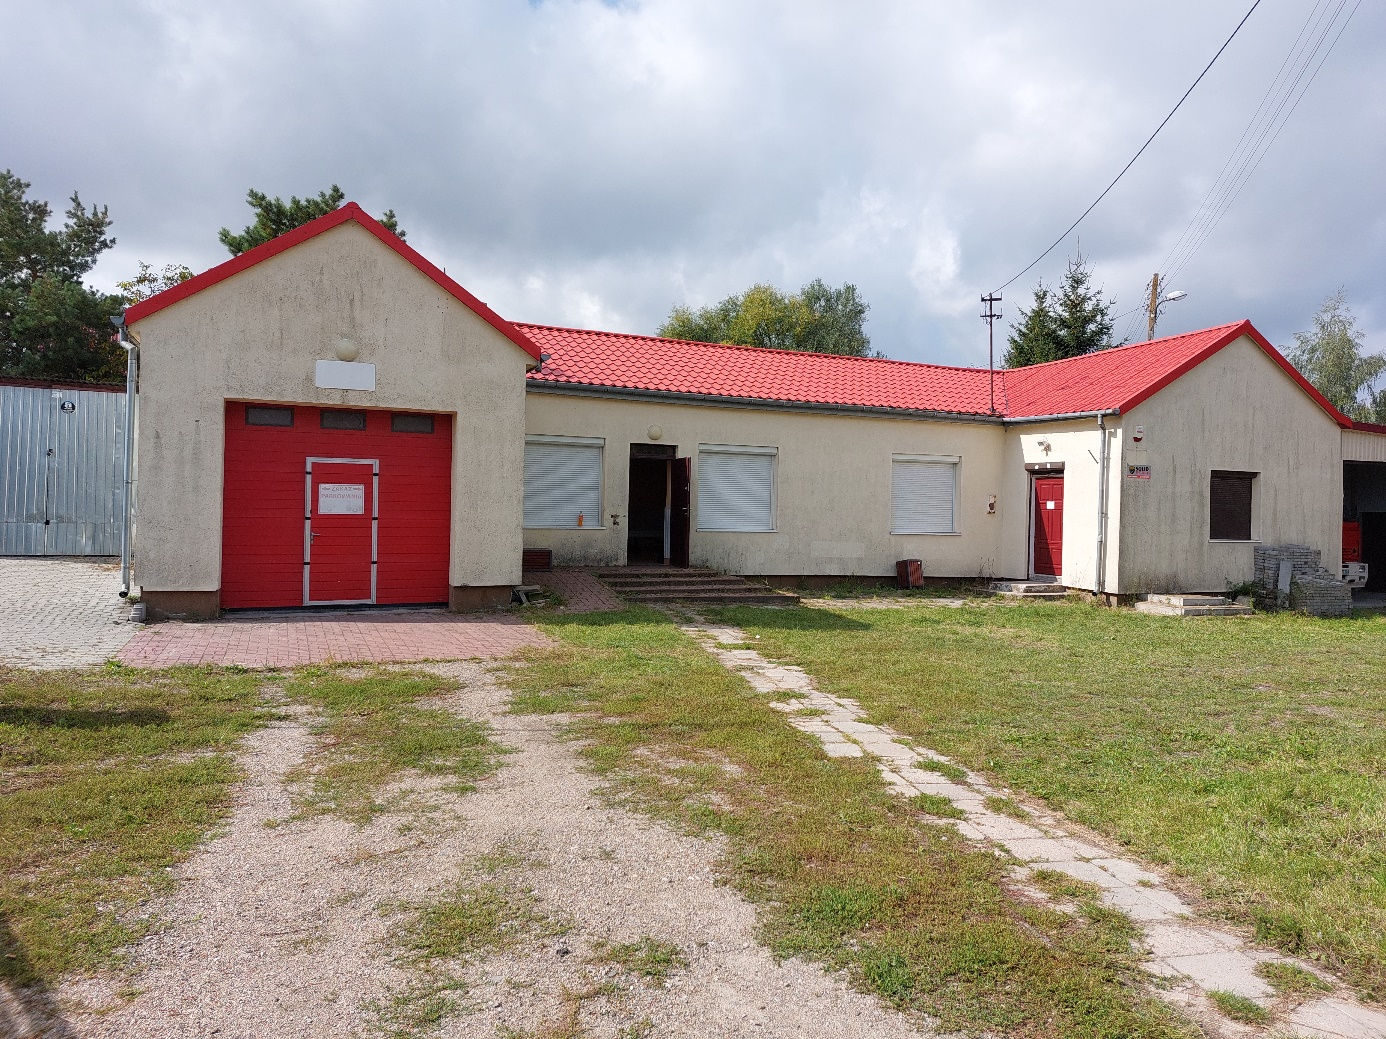 Budynek z jasnej cegły z czerwonym dachem, posiadający czerwone drzwi garażowe i białe wejście, znajdujący się przy żwirowej drodze i trawniku.